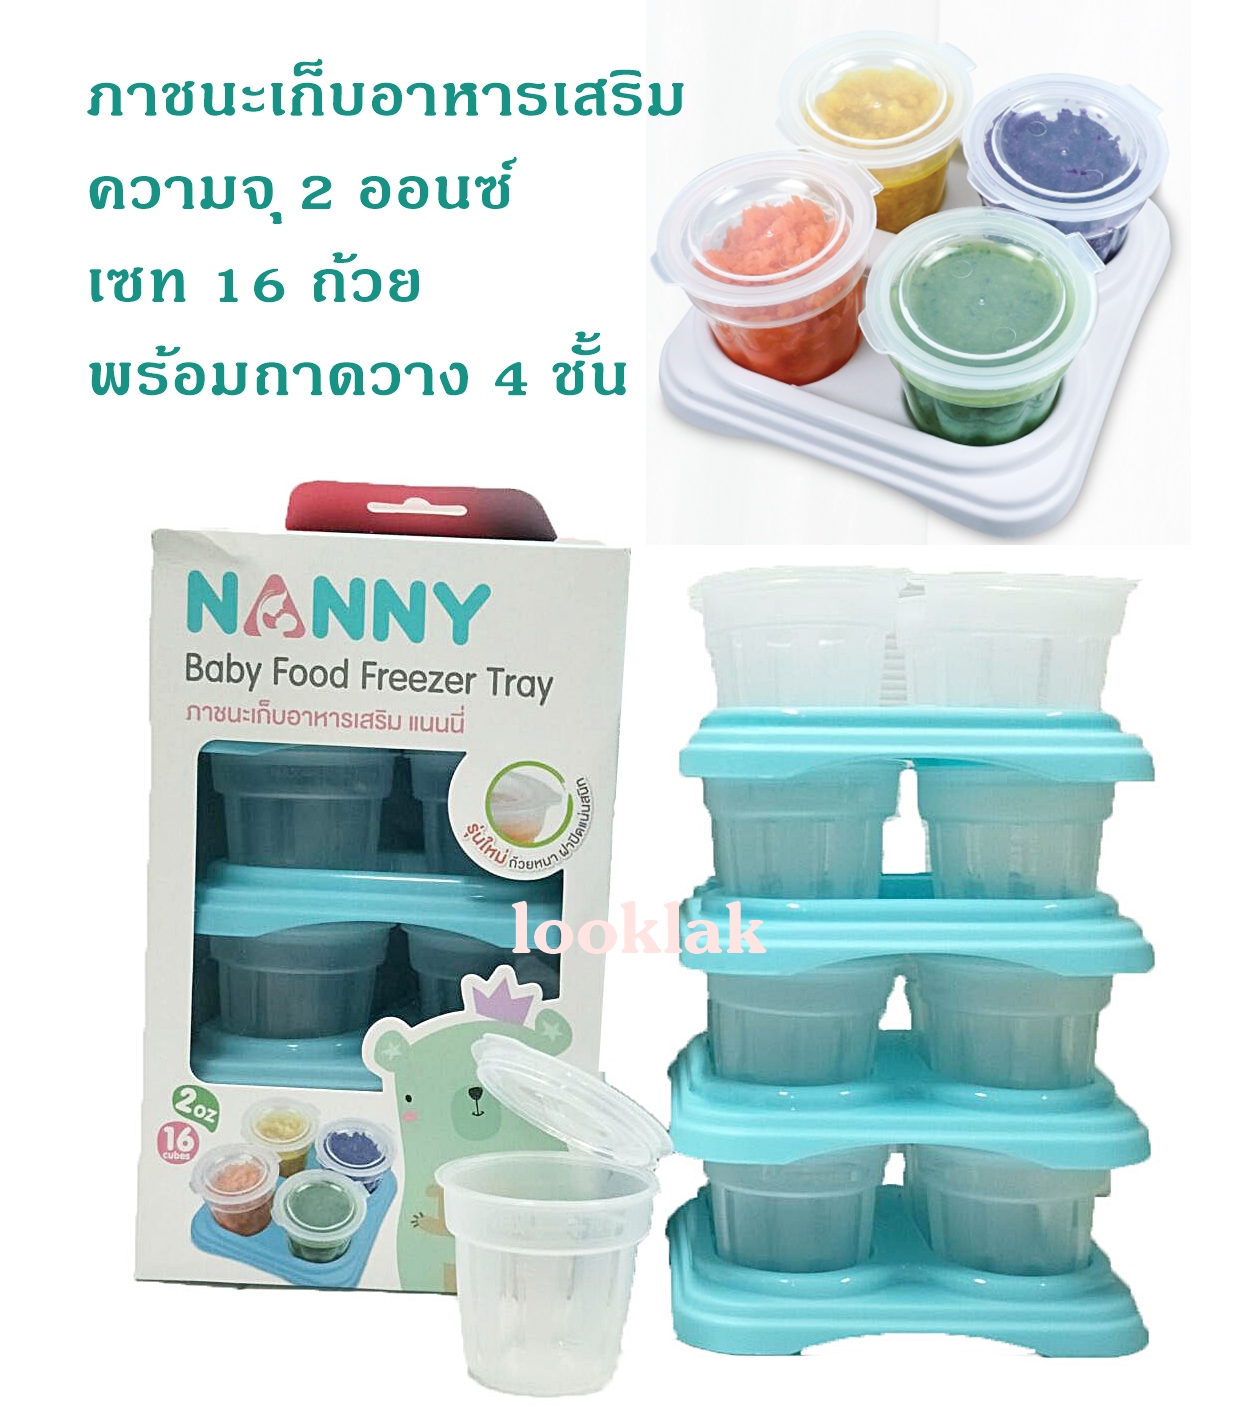 Nanny ภาชนะเก็บอาหารเสริม คอนโด Baby Food Freezer Tray Set ความจุ 2 ออนซ์ 1 กล่อมี 16 ถ้วย แช่แข็ง-อุ่นไมโครเวฟ